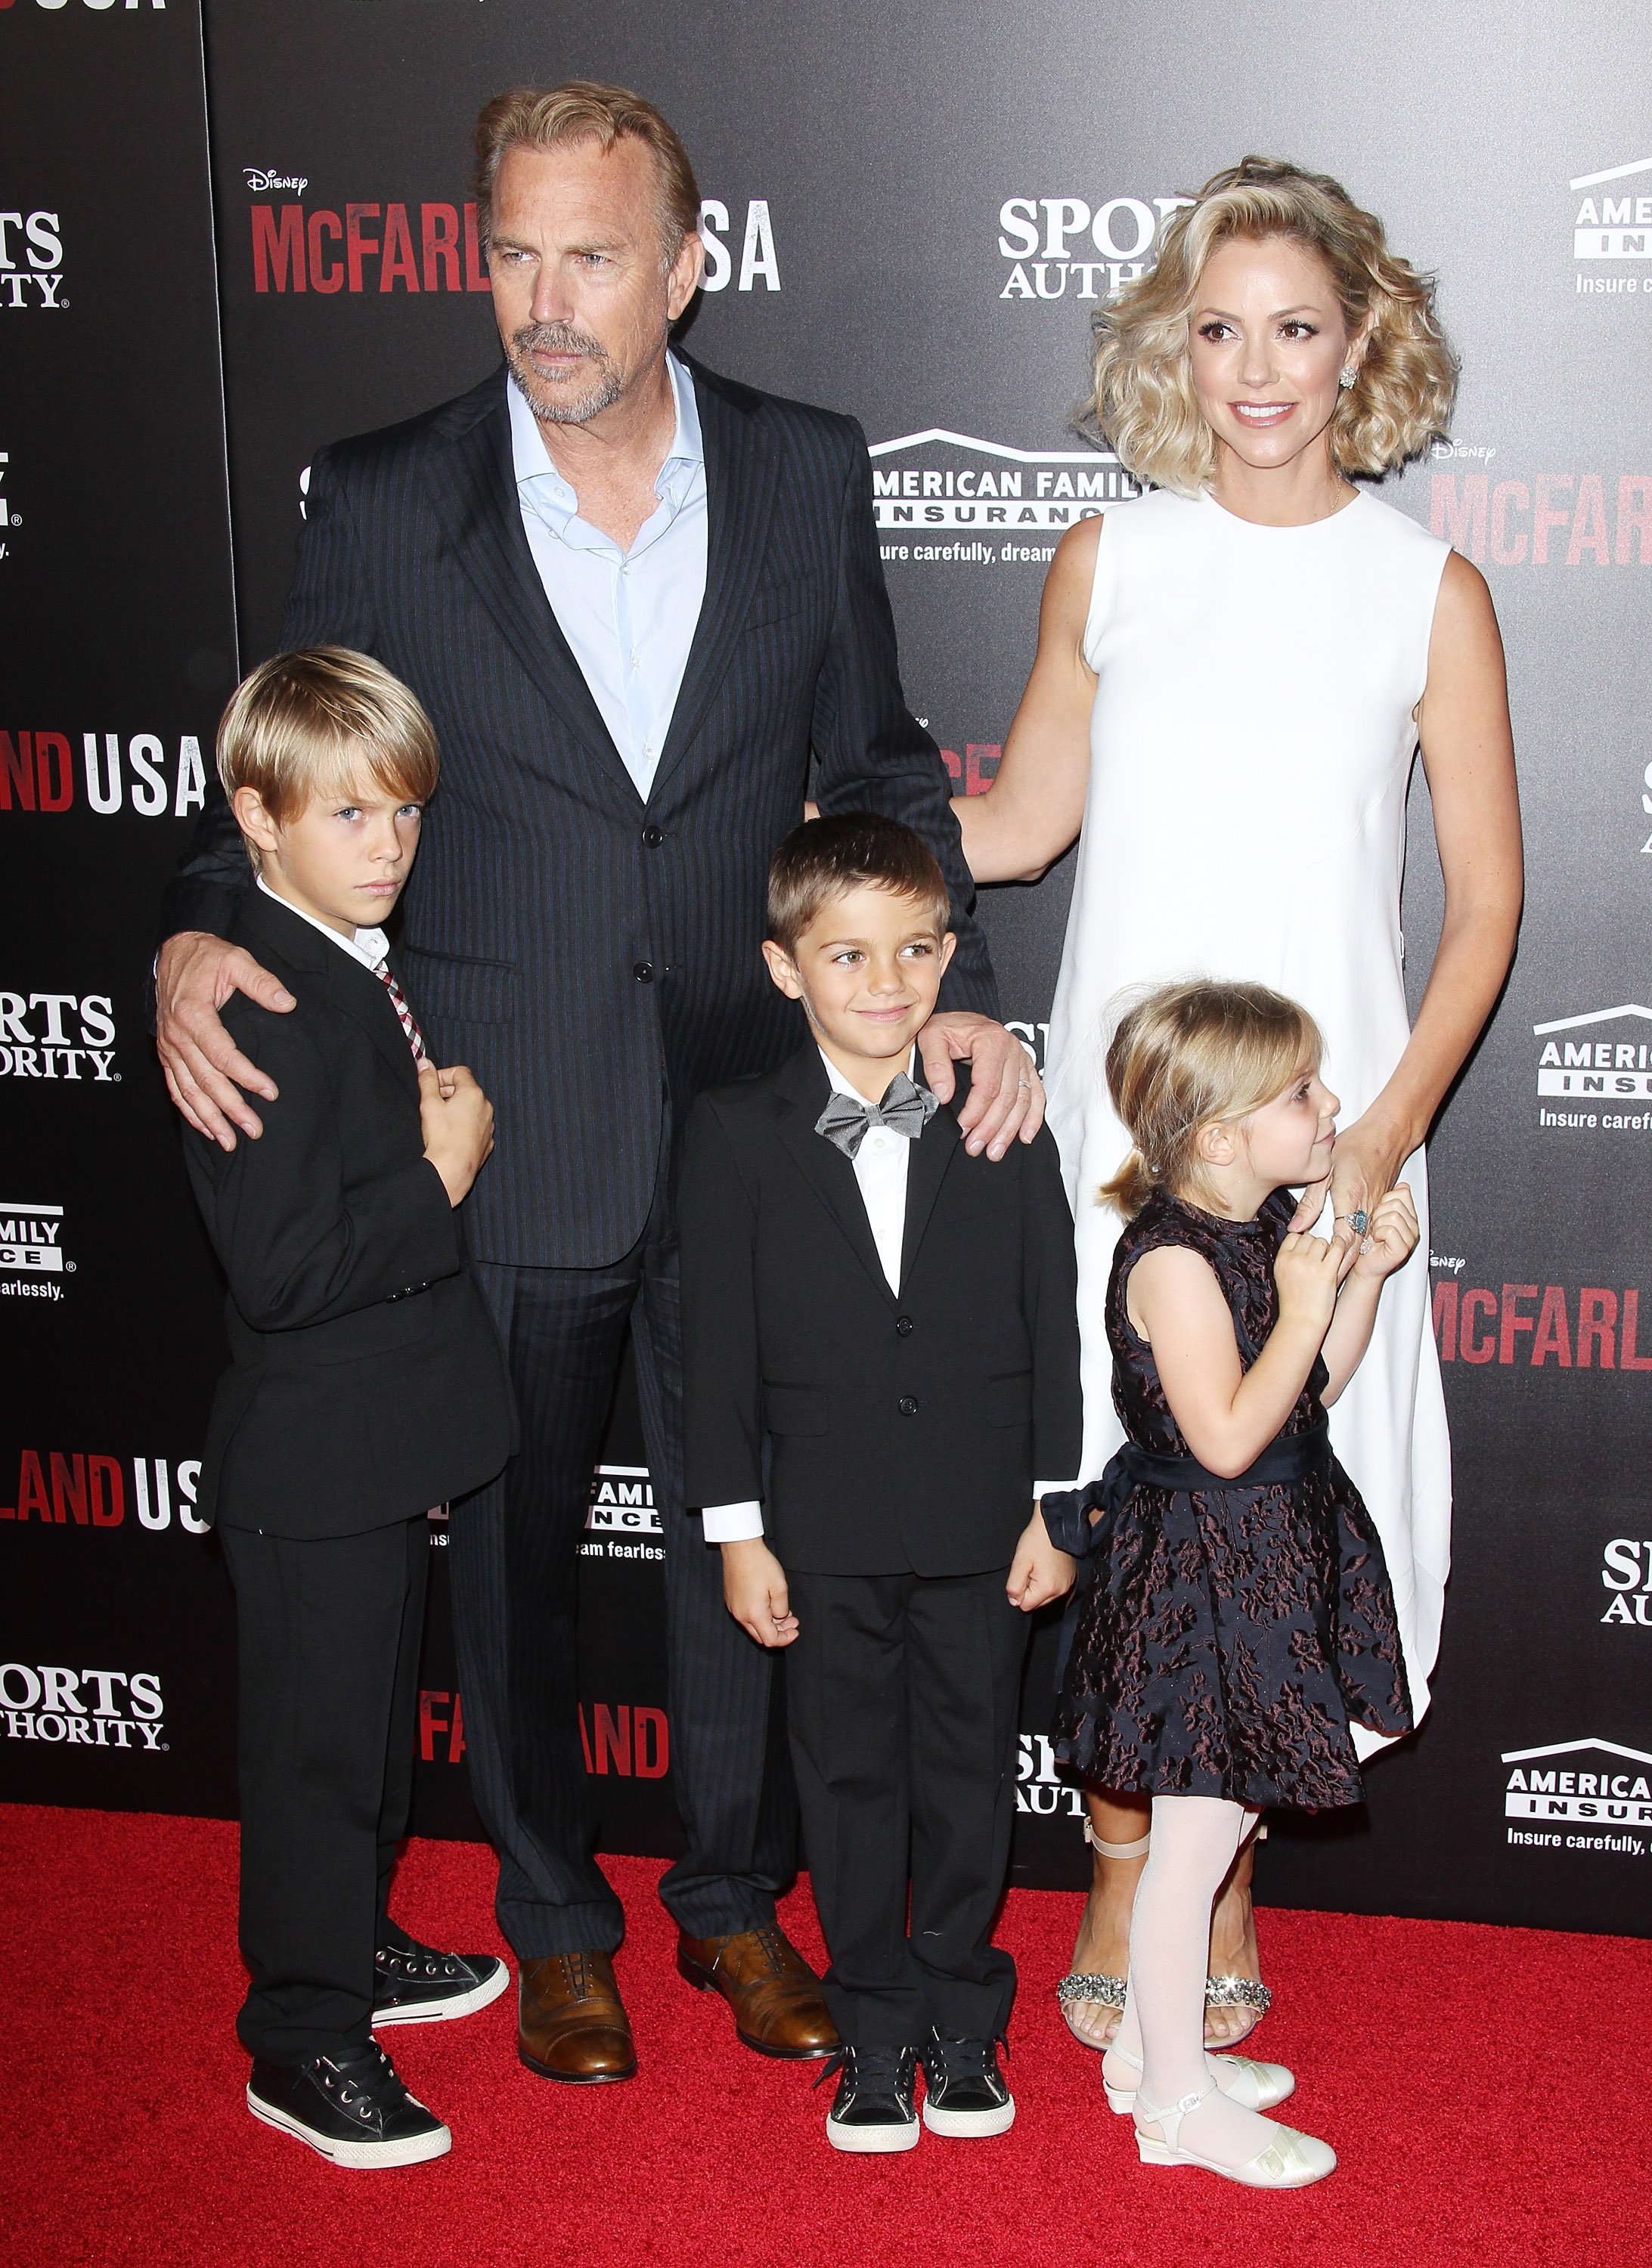 Kevin Costner y su familia llegan al estreno mundial de "McFarland, USA" celebrado en el Teatro El Capitán el 9 de febrero de 2015 en Hollywood, California. | Foto: Getty Images